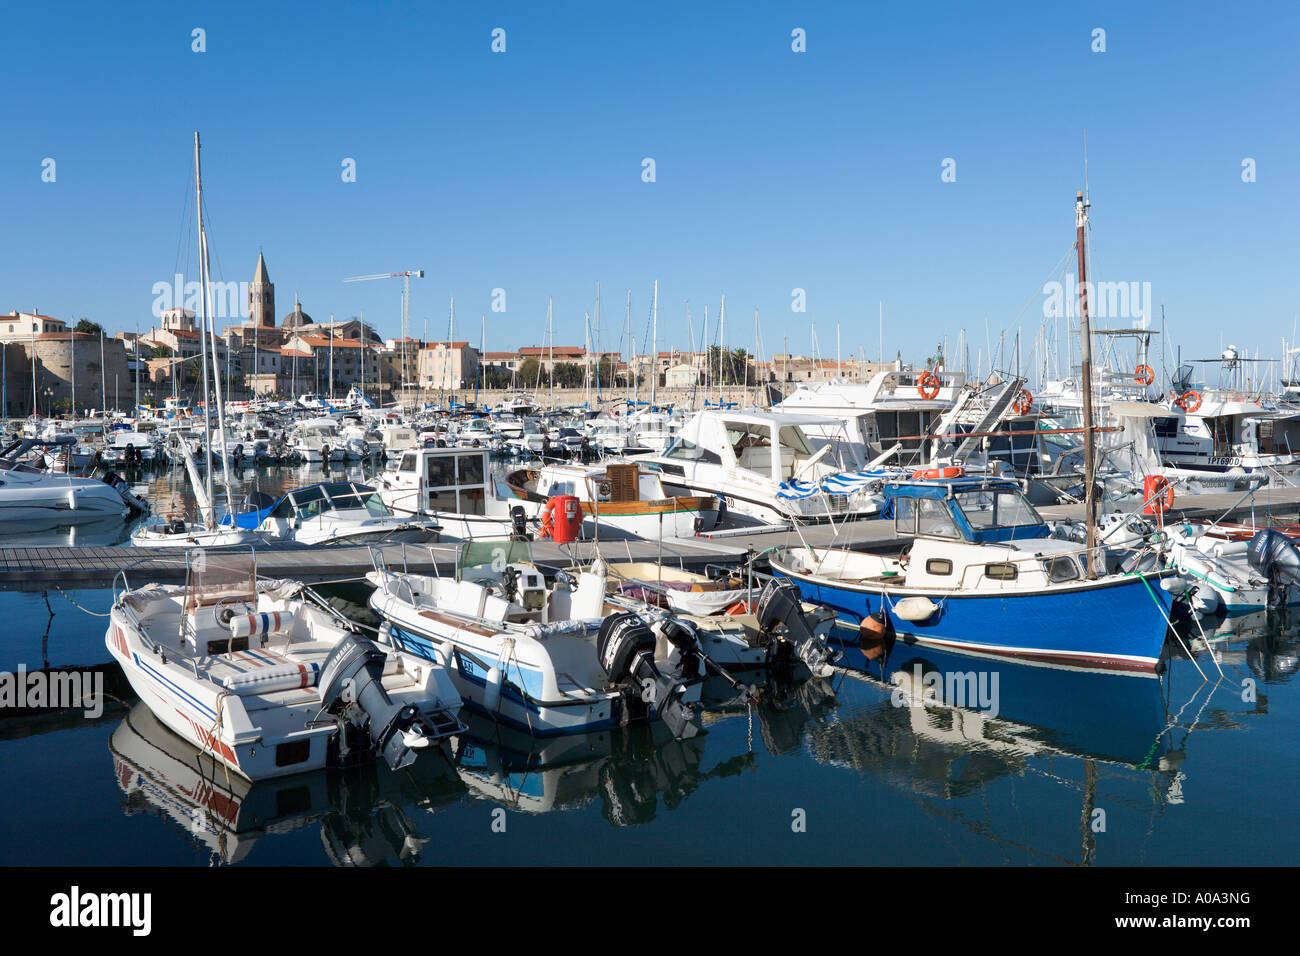 Le barche nel porto della città vecchia, Alghero, Sardegna, Italia Foto Stock